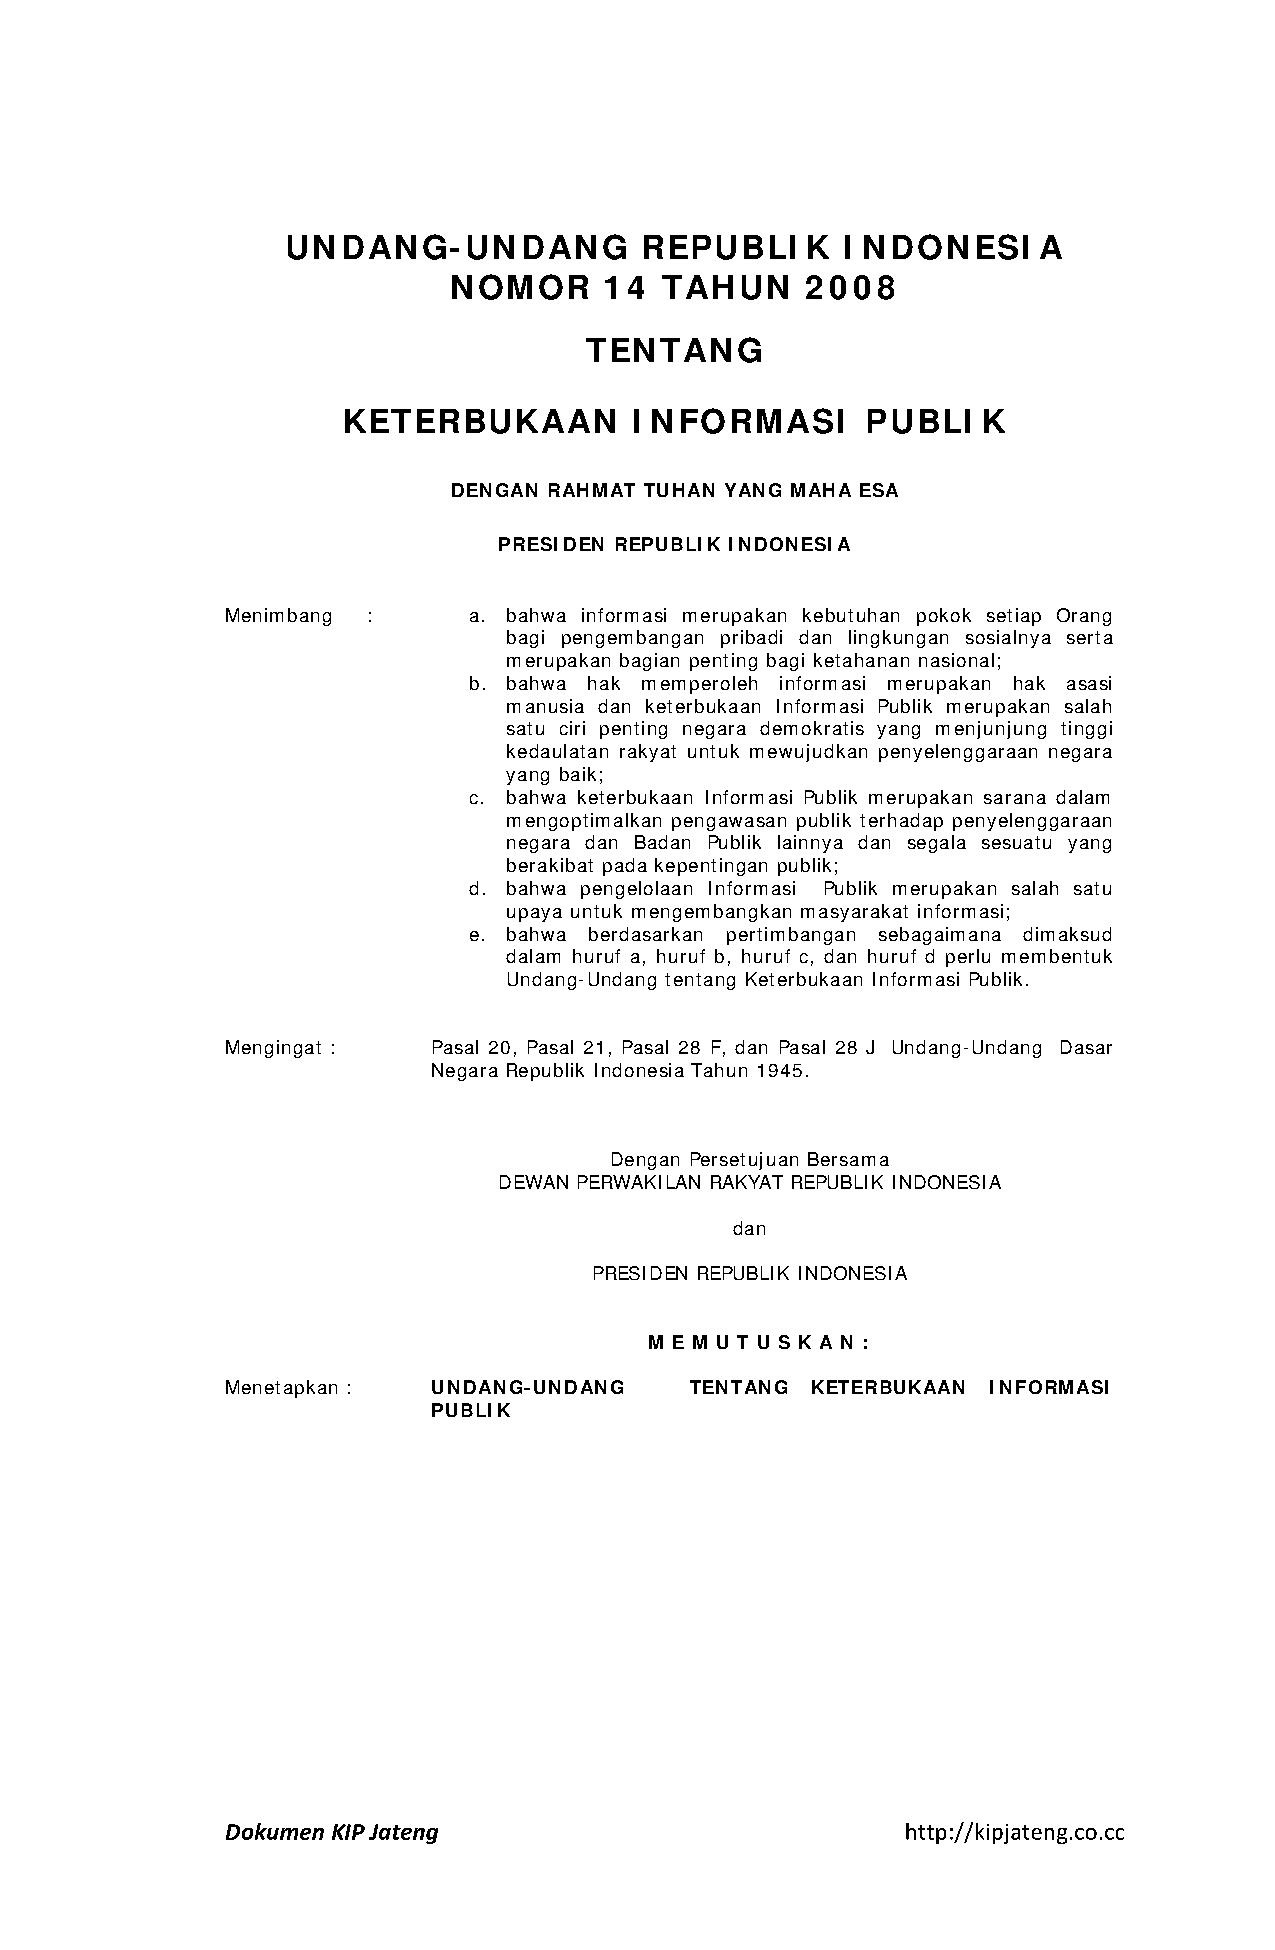 UU14th2008 ttg KIP (1).pdf